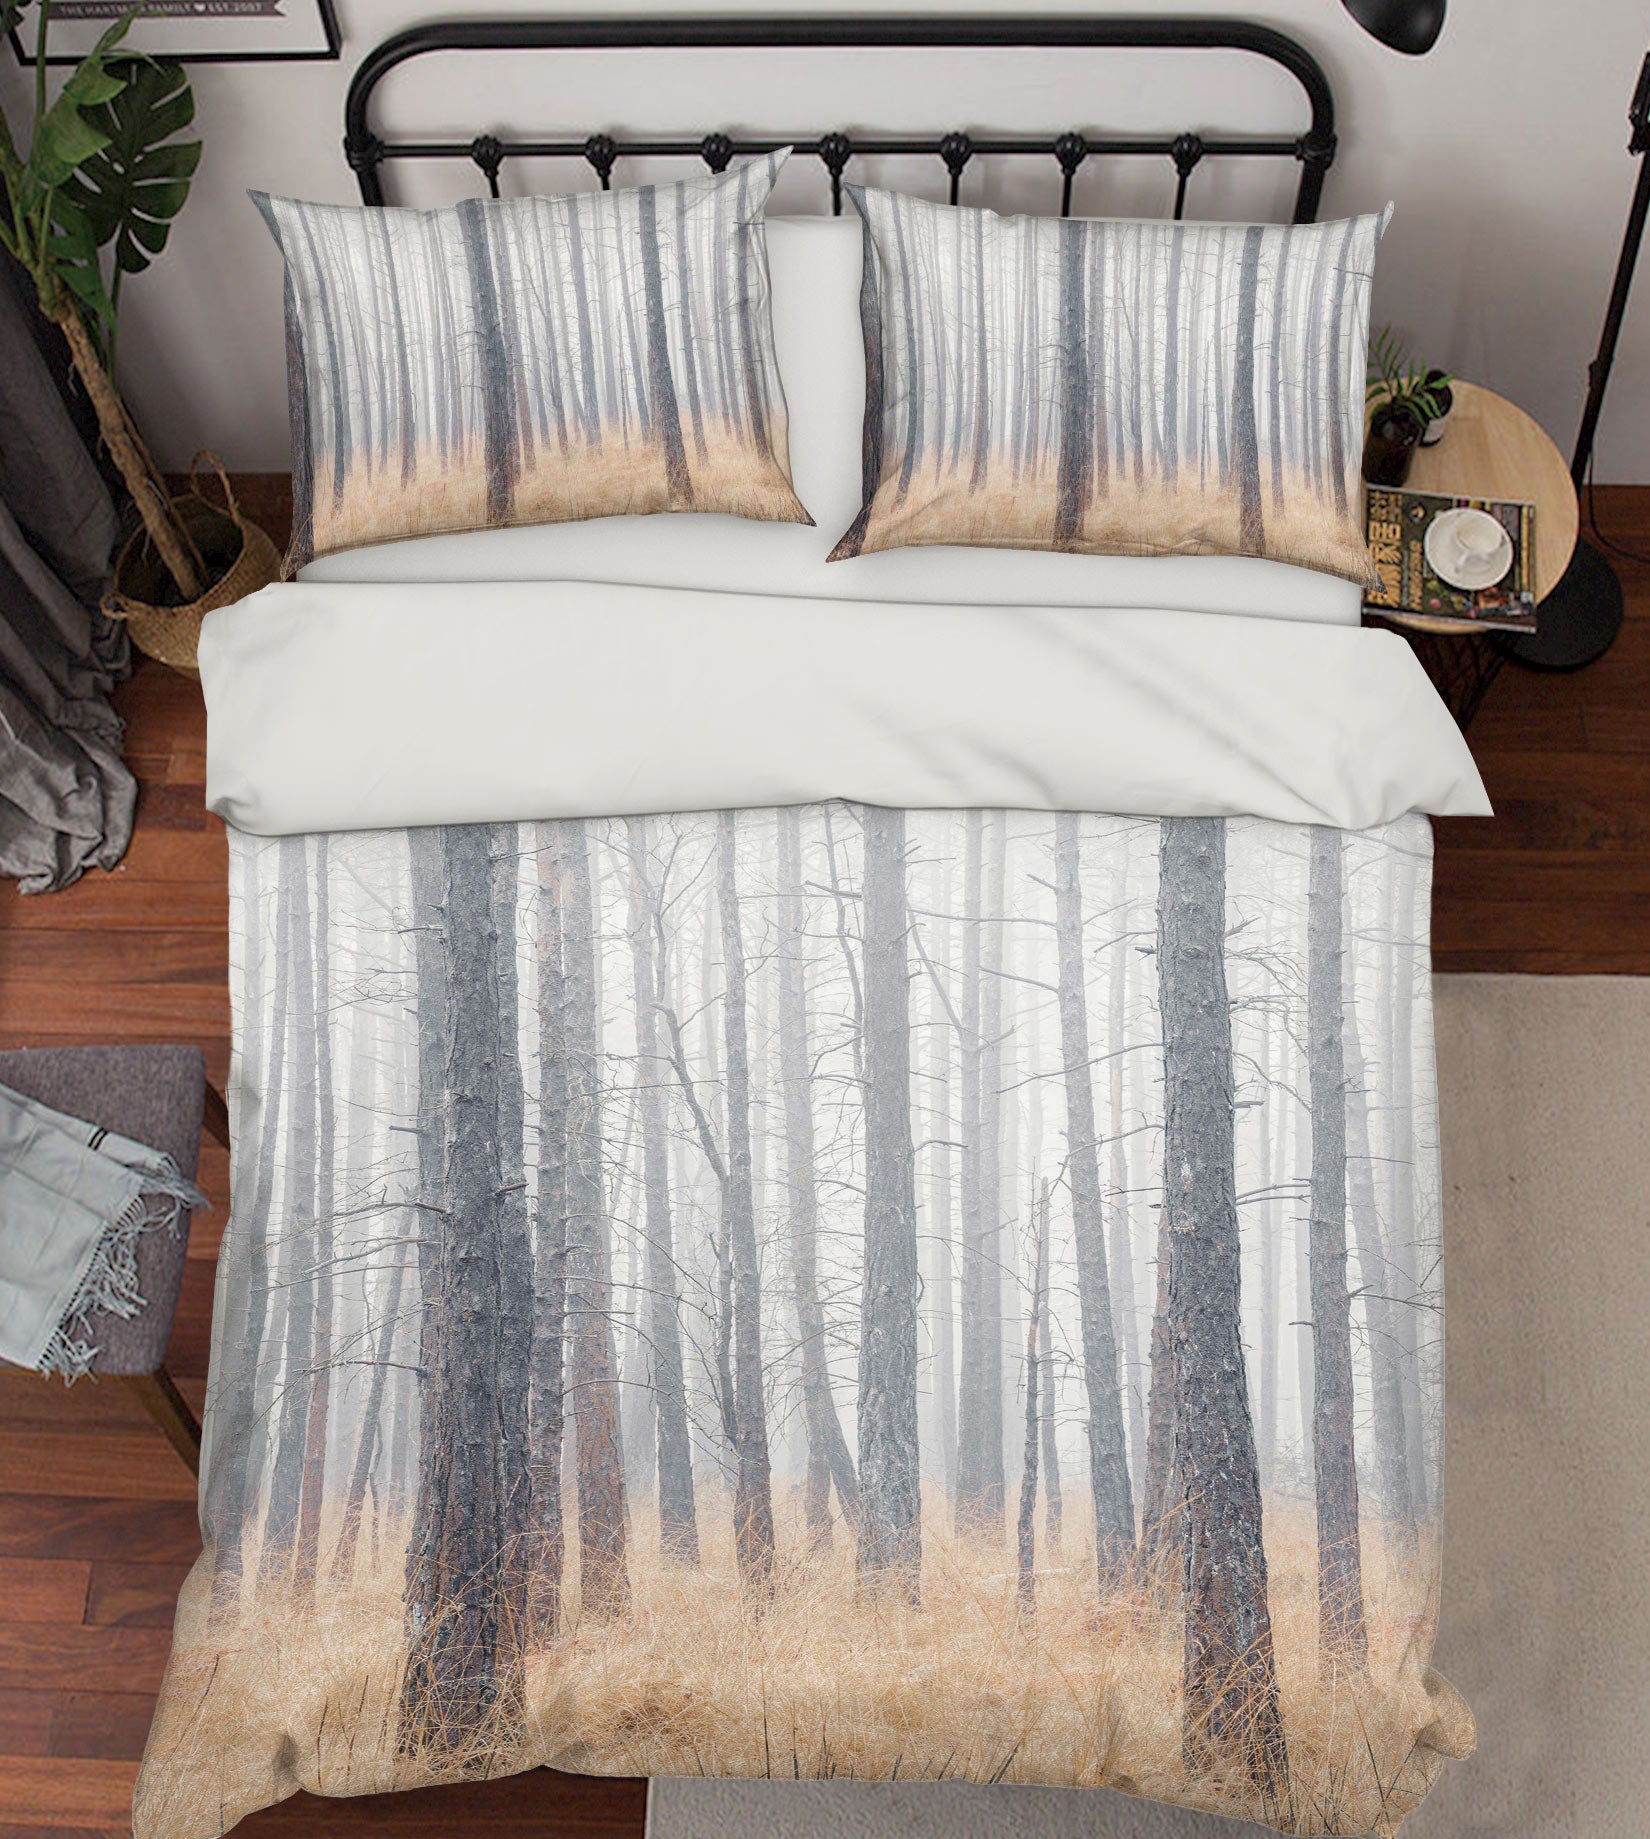 3D Trunk Grass 6987 Assaf Frank Bedding Bed Pillowcases Quilt Cover Duvet Cover